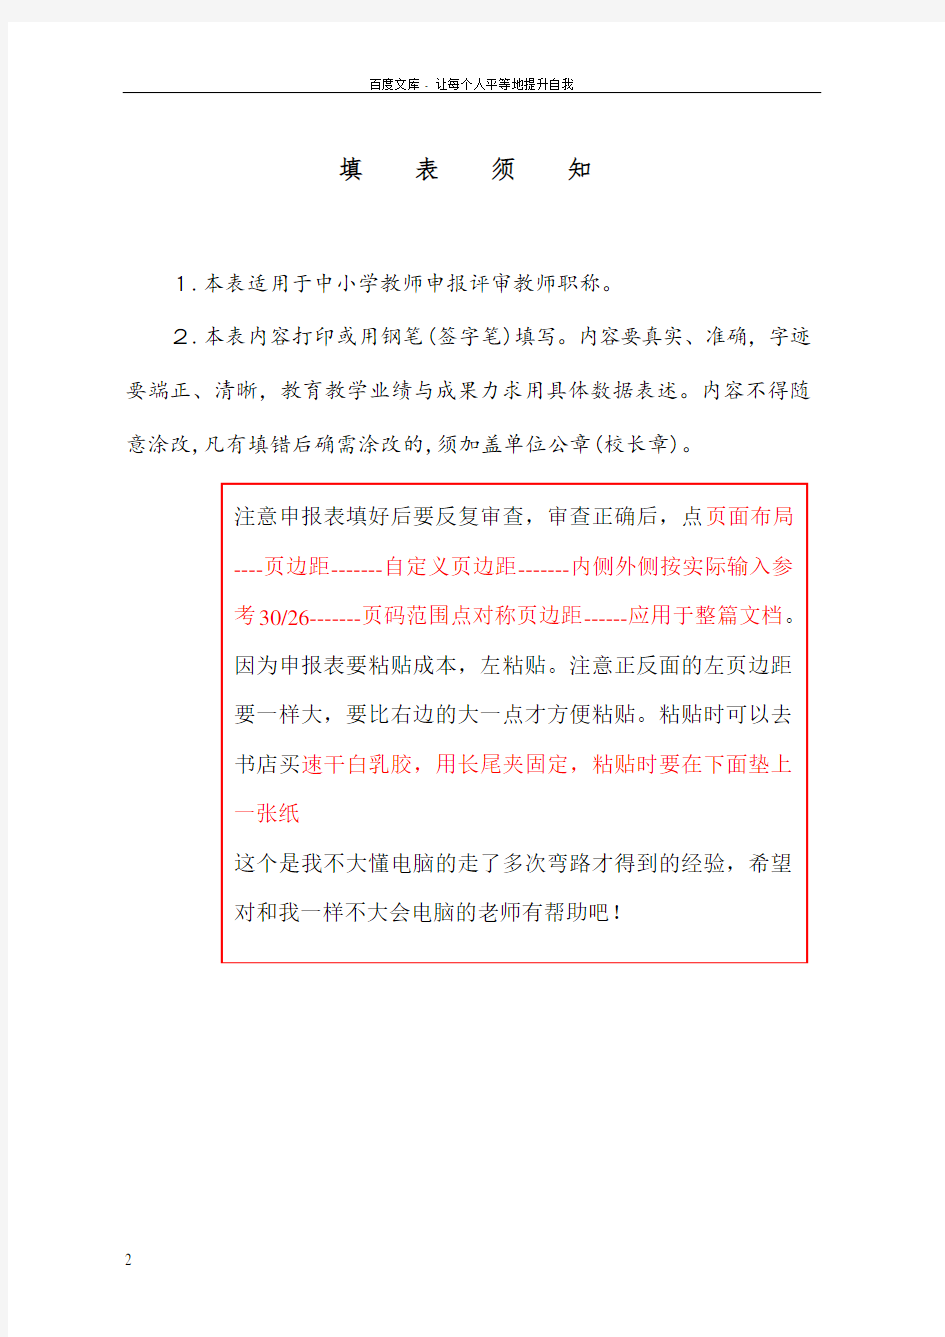 2017年广东省中小学教师职称评审申报表(初稿样表)